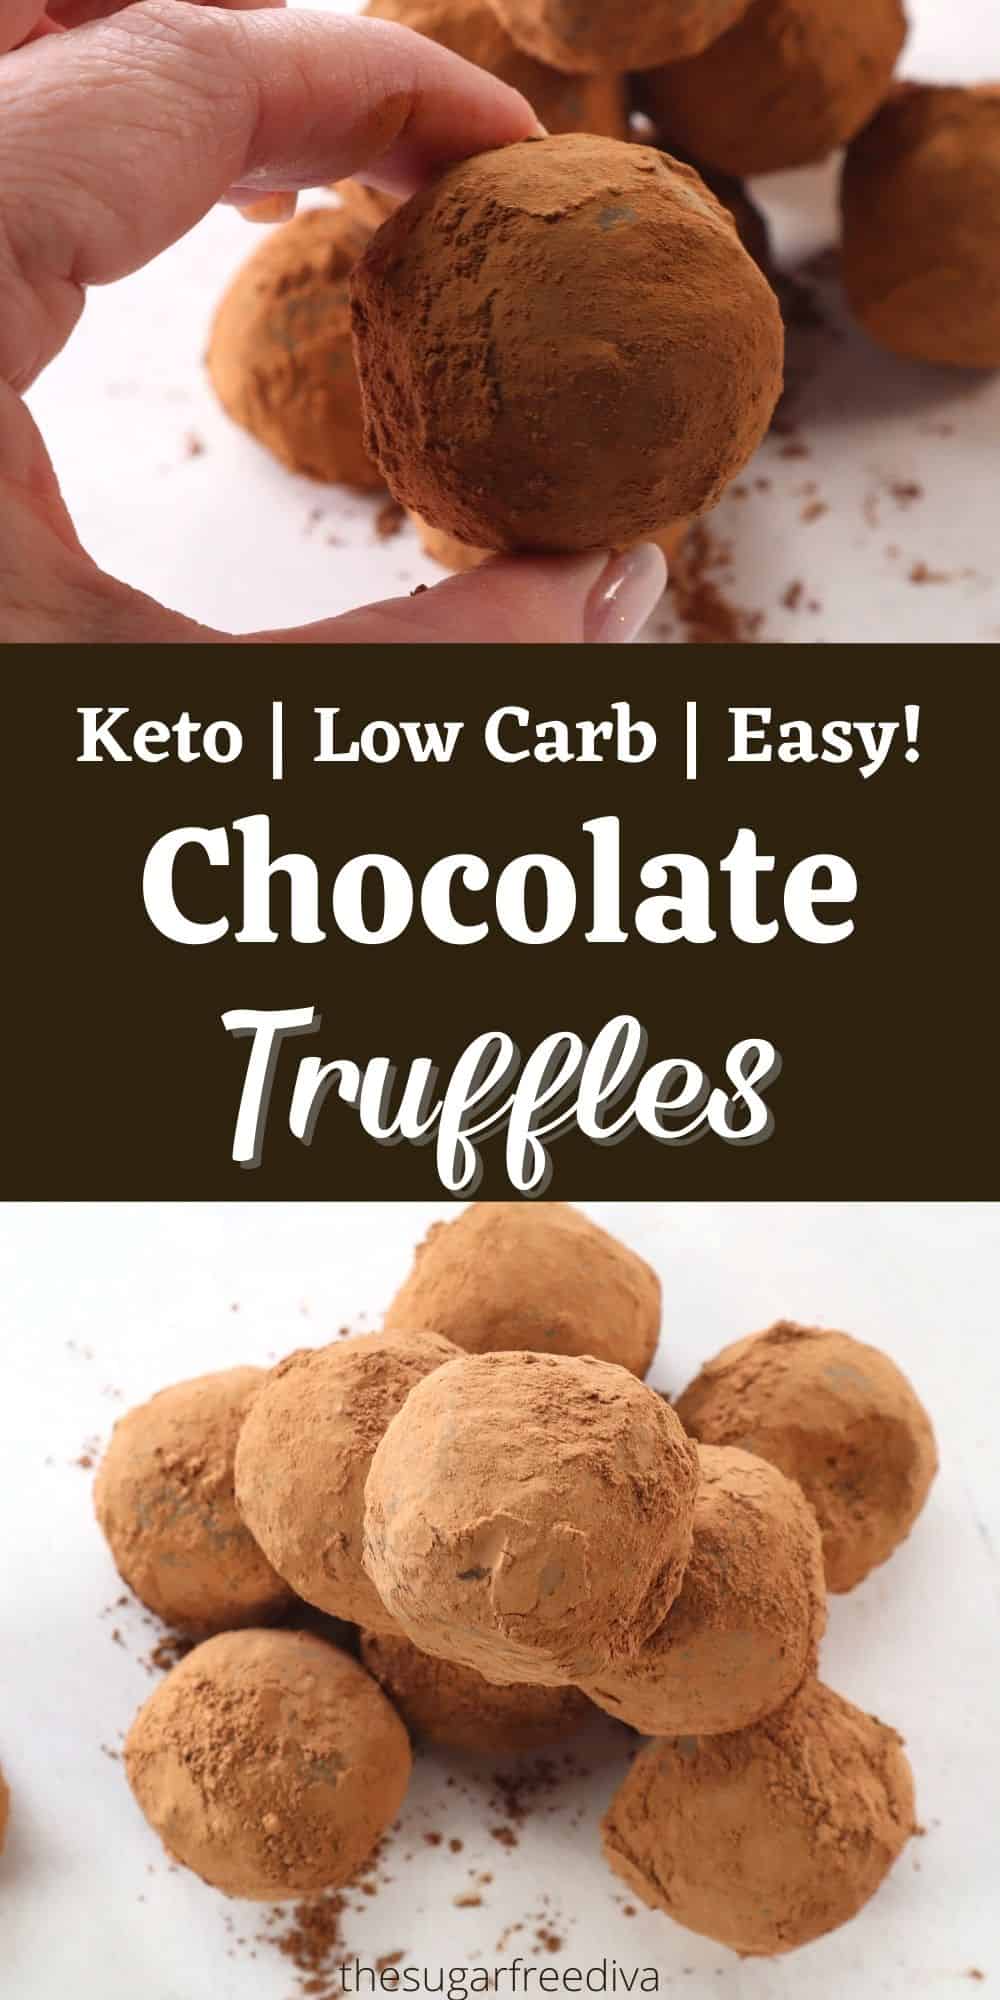 Sugar Free Chocolate Truffles (keto, low carb)